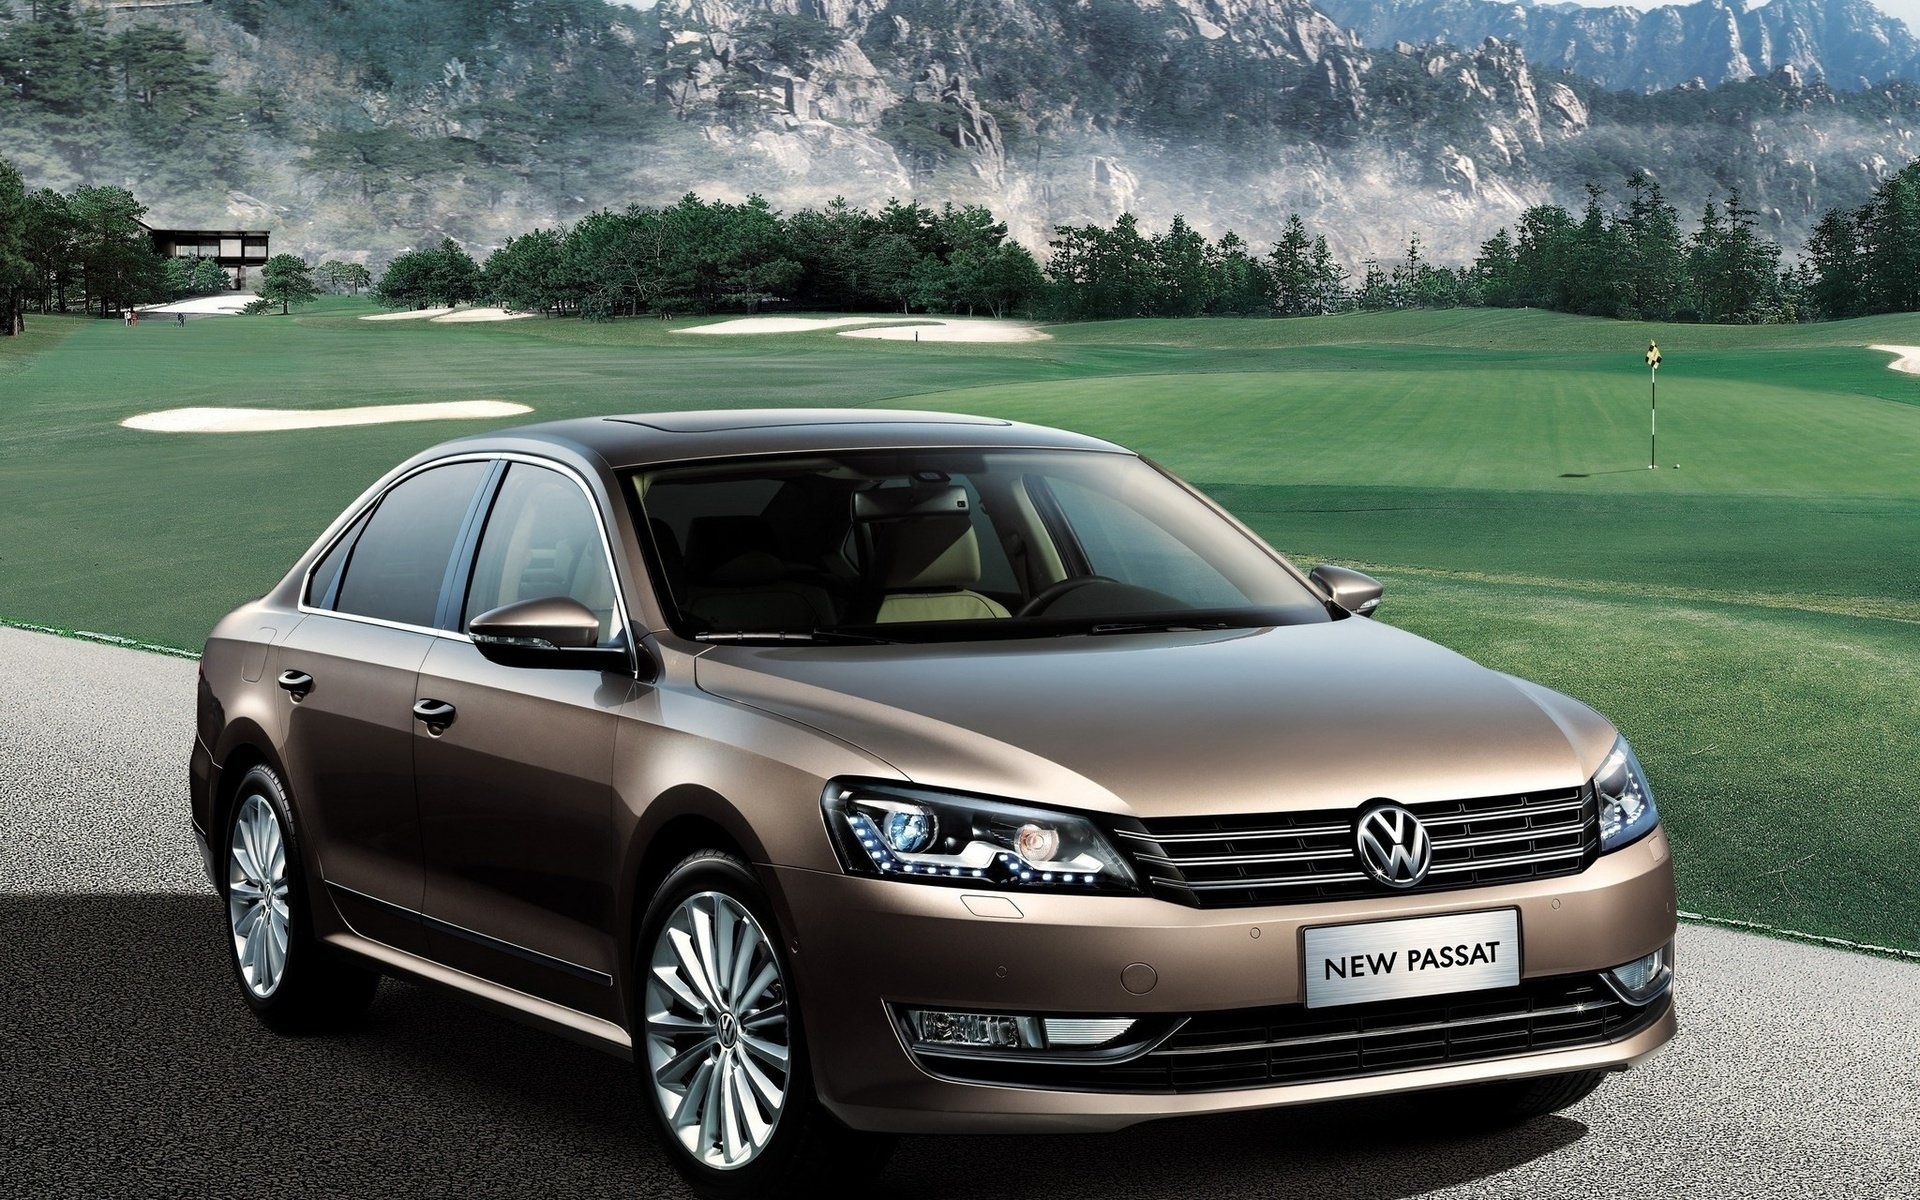 Volkswagen Passat, HD wallpapers, Automotive excellence, Performance luxury, 1920x1200 HD Desktop